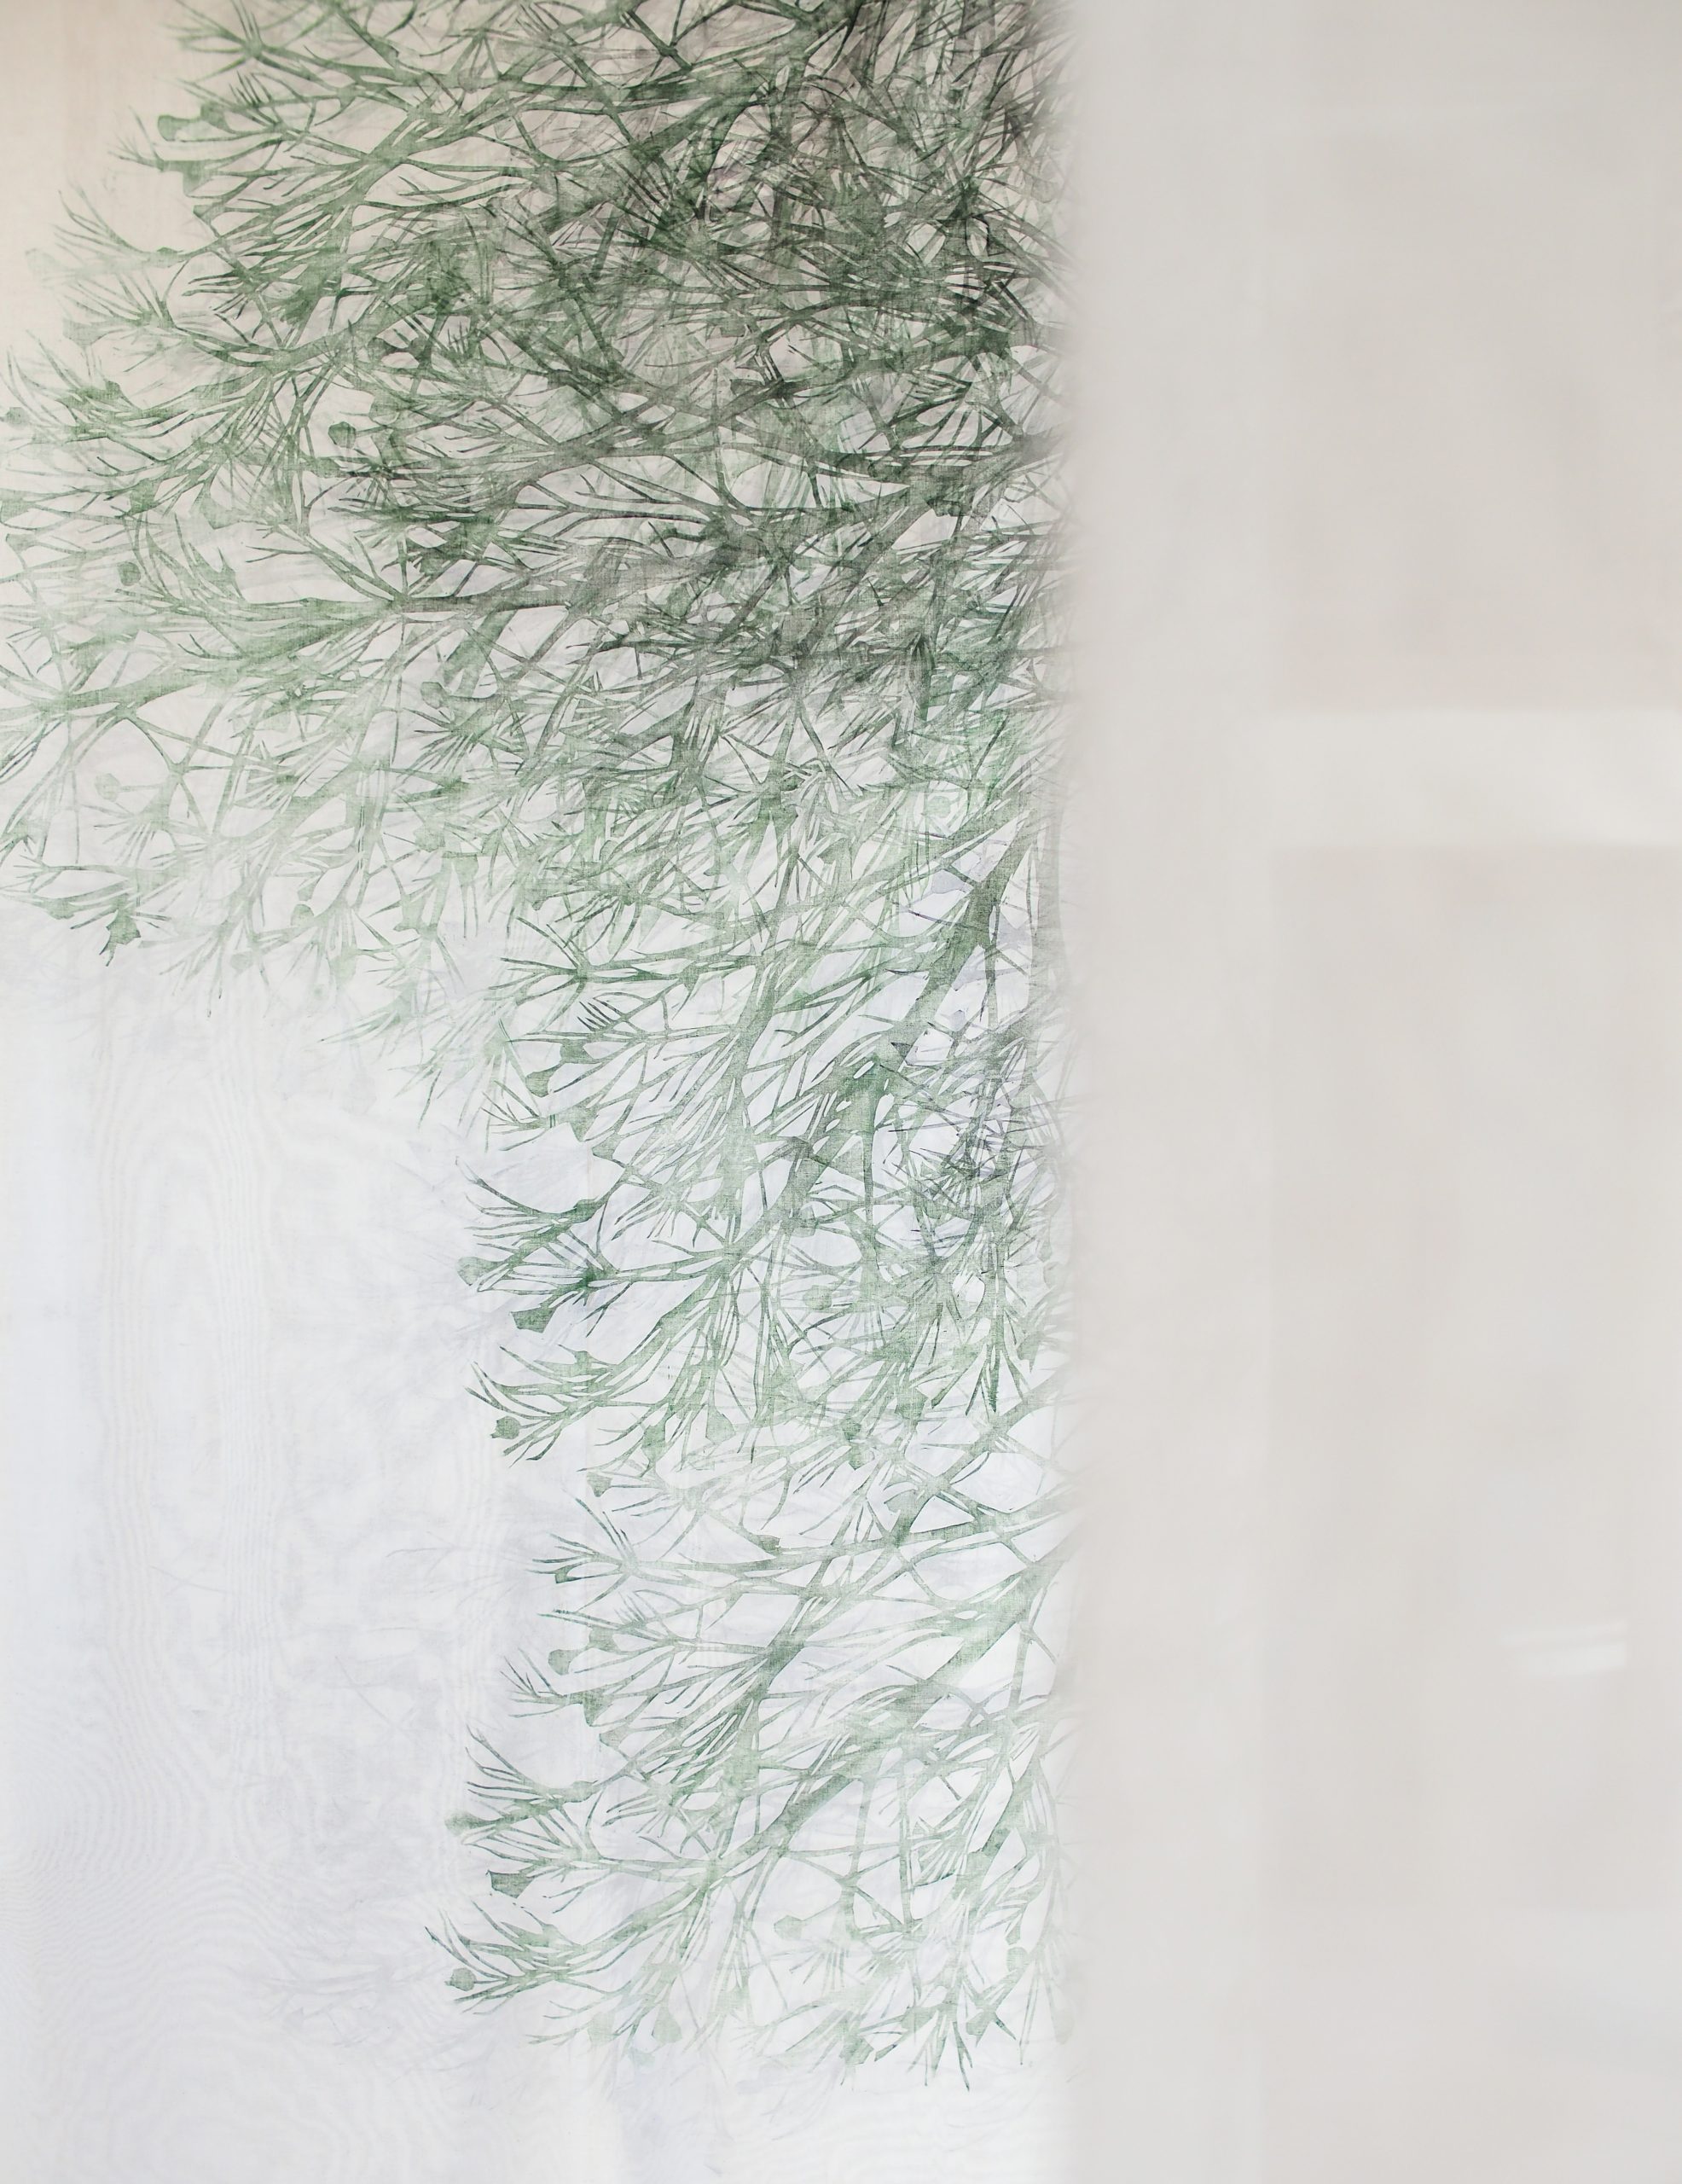 VISITA GUIDATA GRATUITA alla mostra «L’UOMO NON È CHE UNA CANNA». Fragilità e dimensione spirituale con L’artista Asako Hishiki